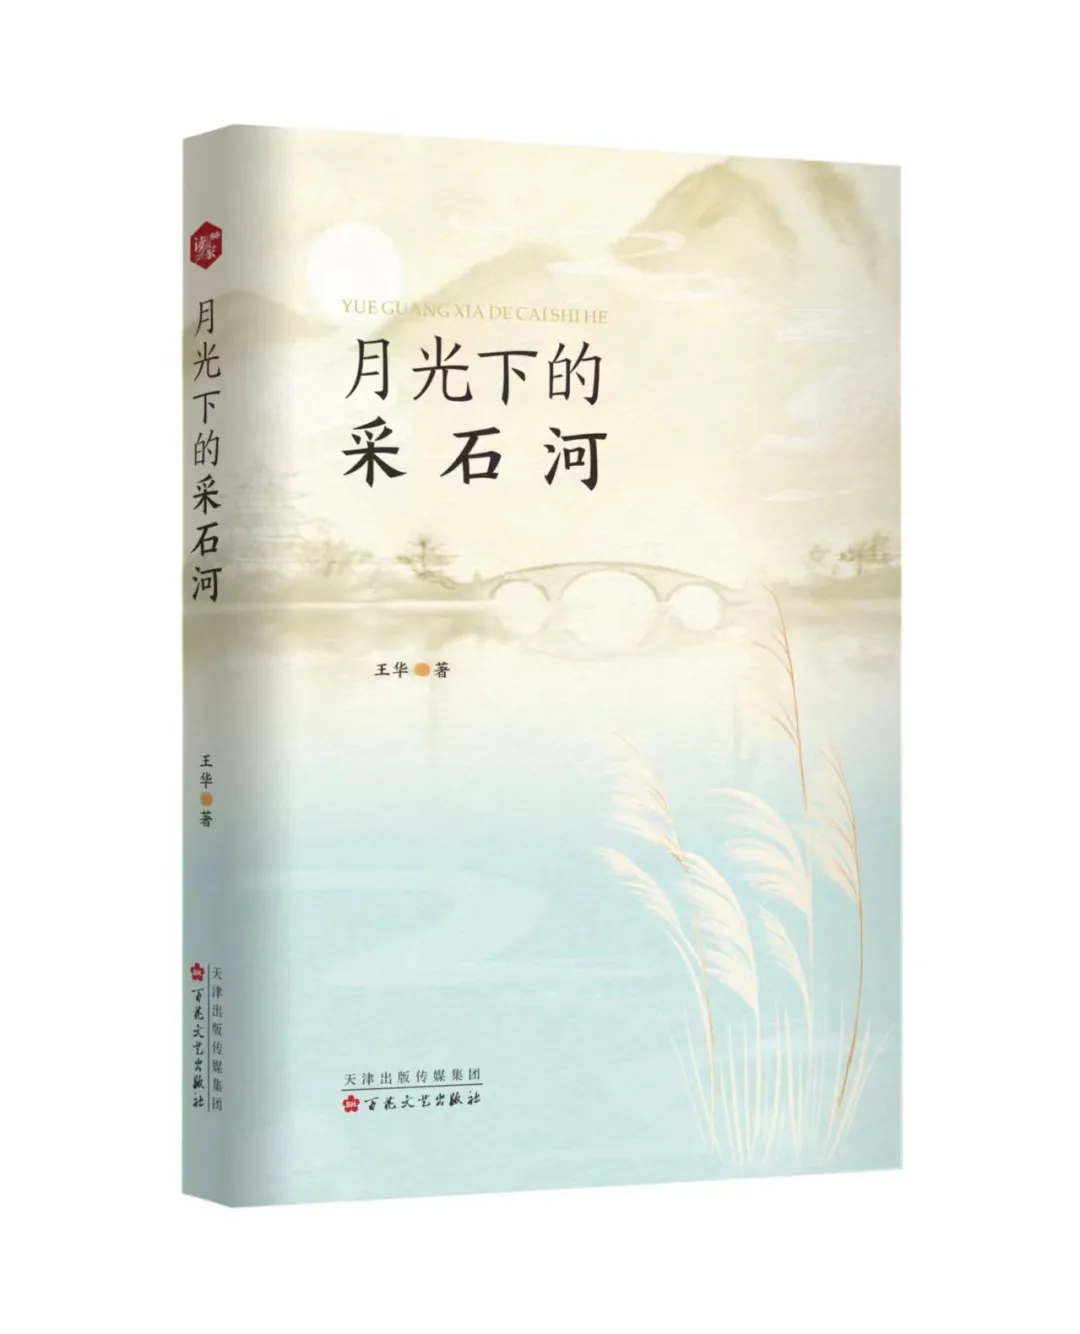 新书发布 | 作家王华诗集《月光下的采石河》出版发行